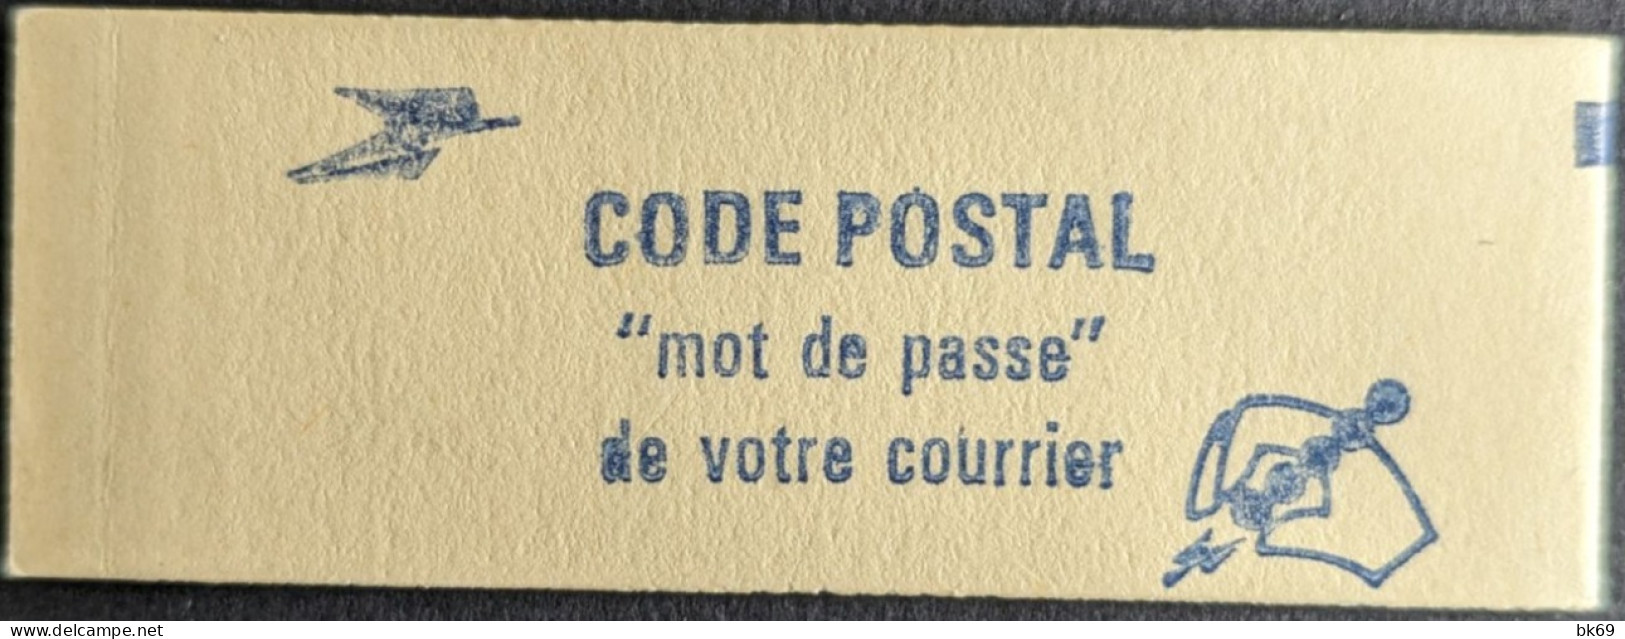 2220 C1 Conf. - Gomme Striée Carnet Fermé Liberté 1.80F Rouge - Moderne : 1959-...